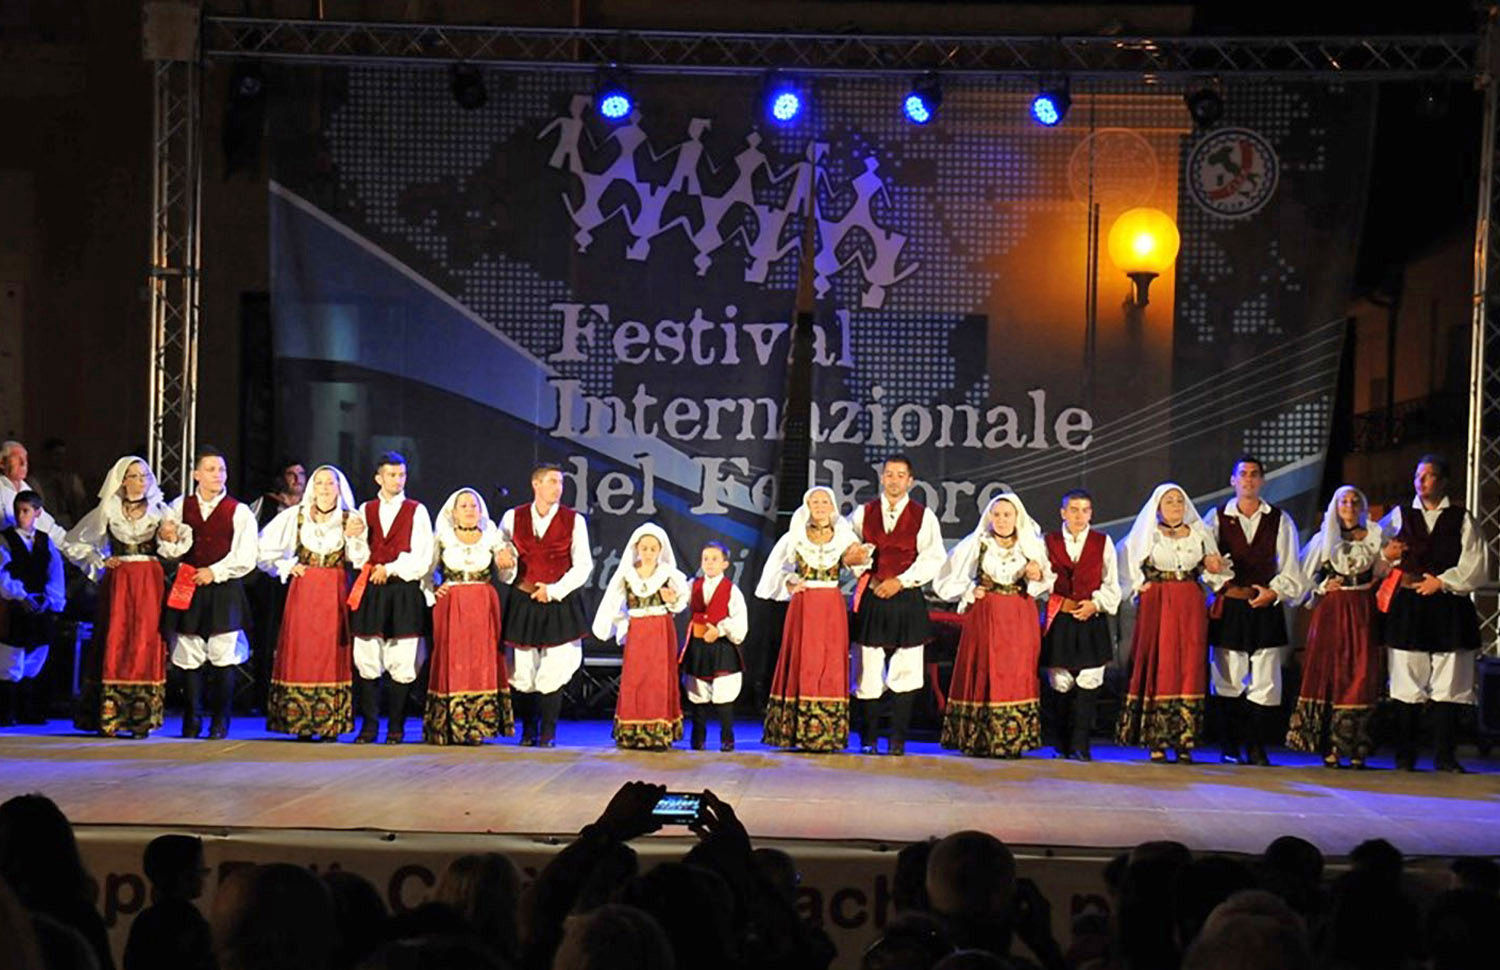 Festa grande ad Arzachena. Al via la Sagra del Vitello e la XXV Rassegna Internazionale del Folklore